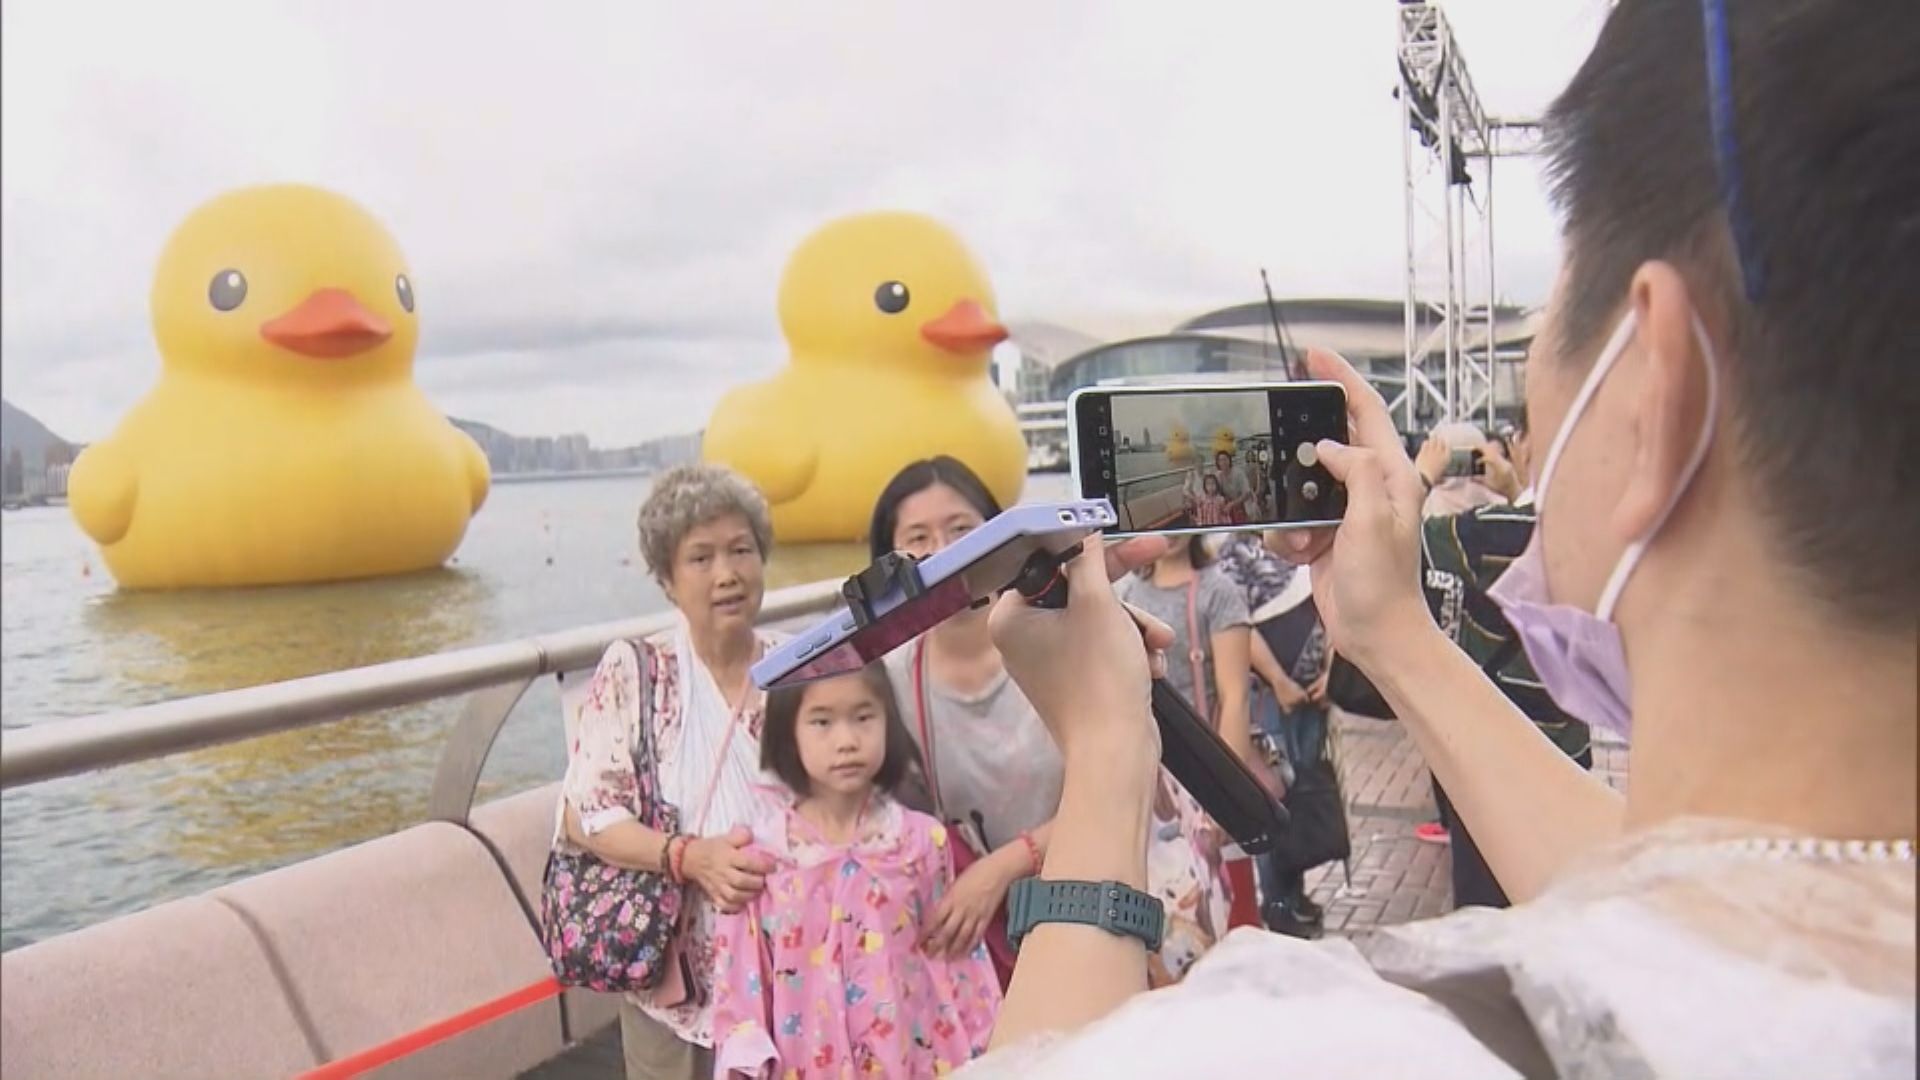 巨型黃鴨下午巡遊後 將結束維港展覽